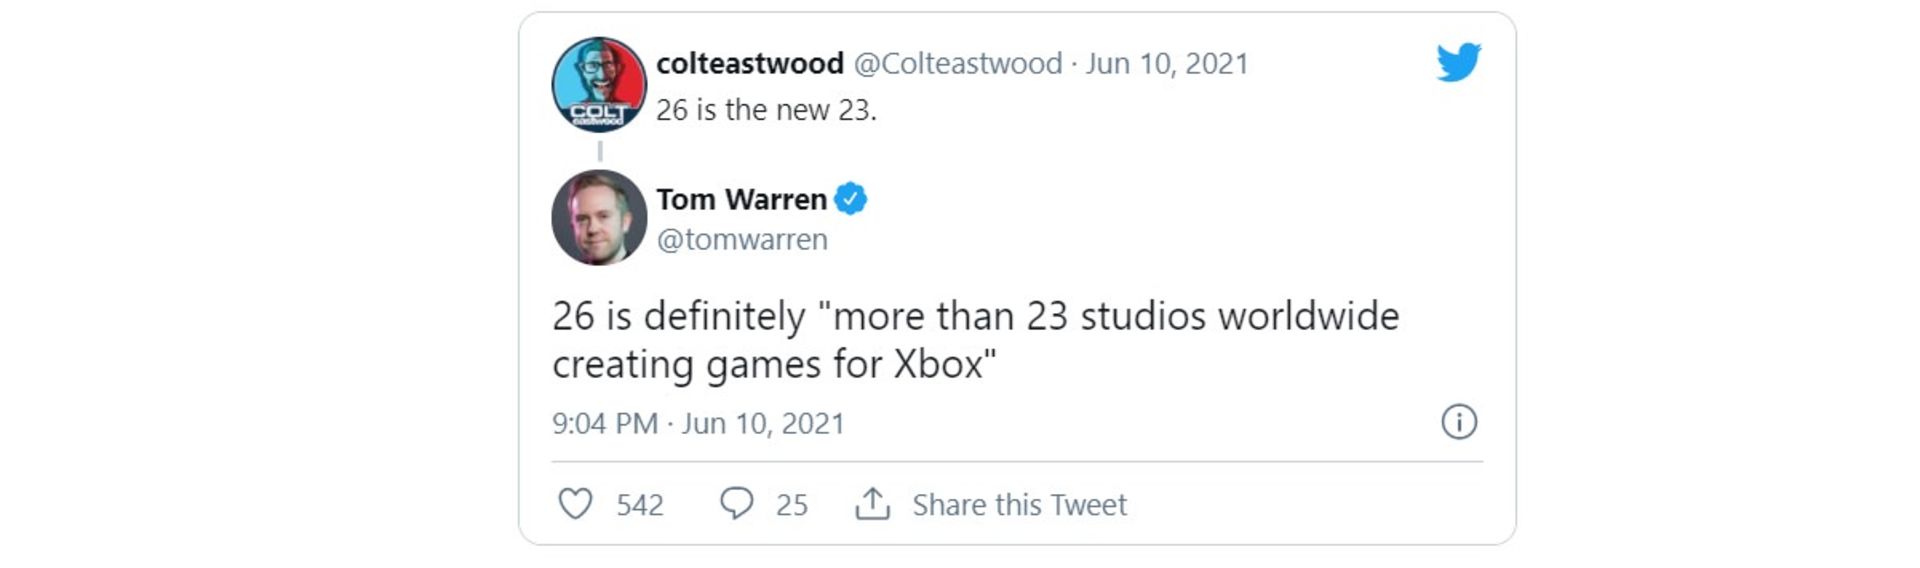 توییت تام وارن در مورد استودیوهای جدید مایکروسافت